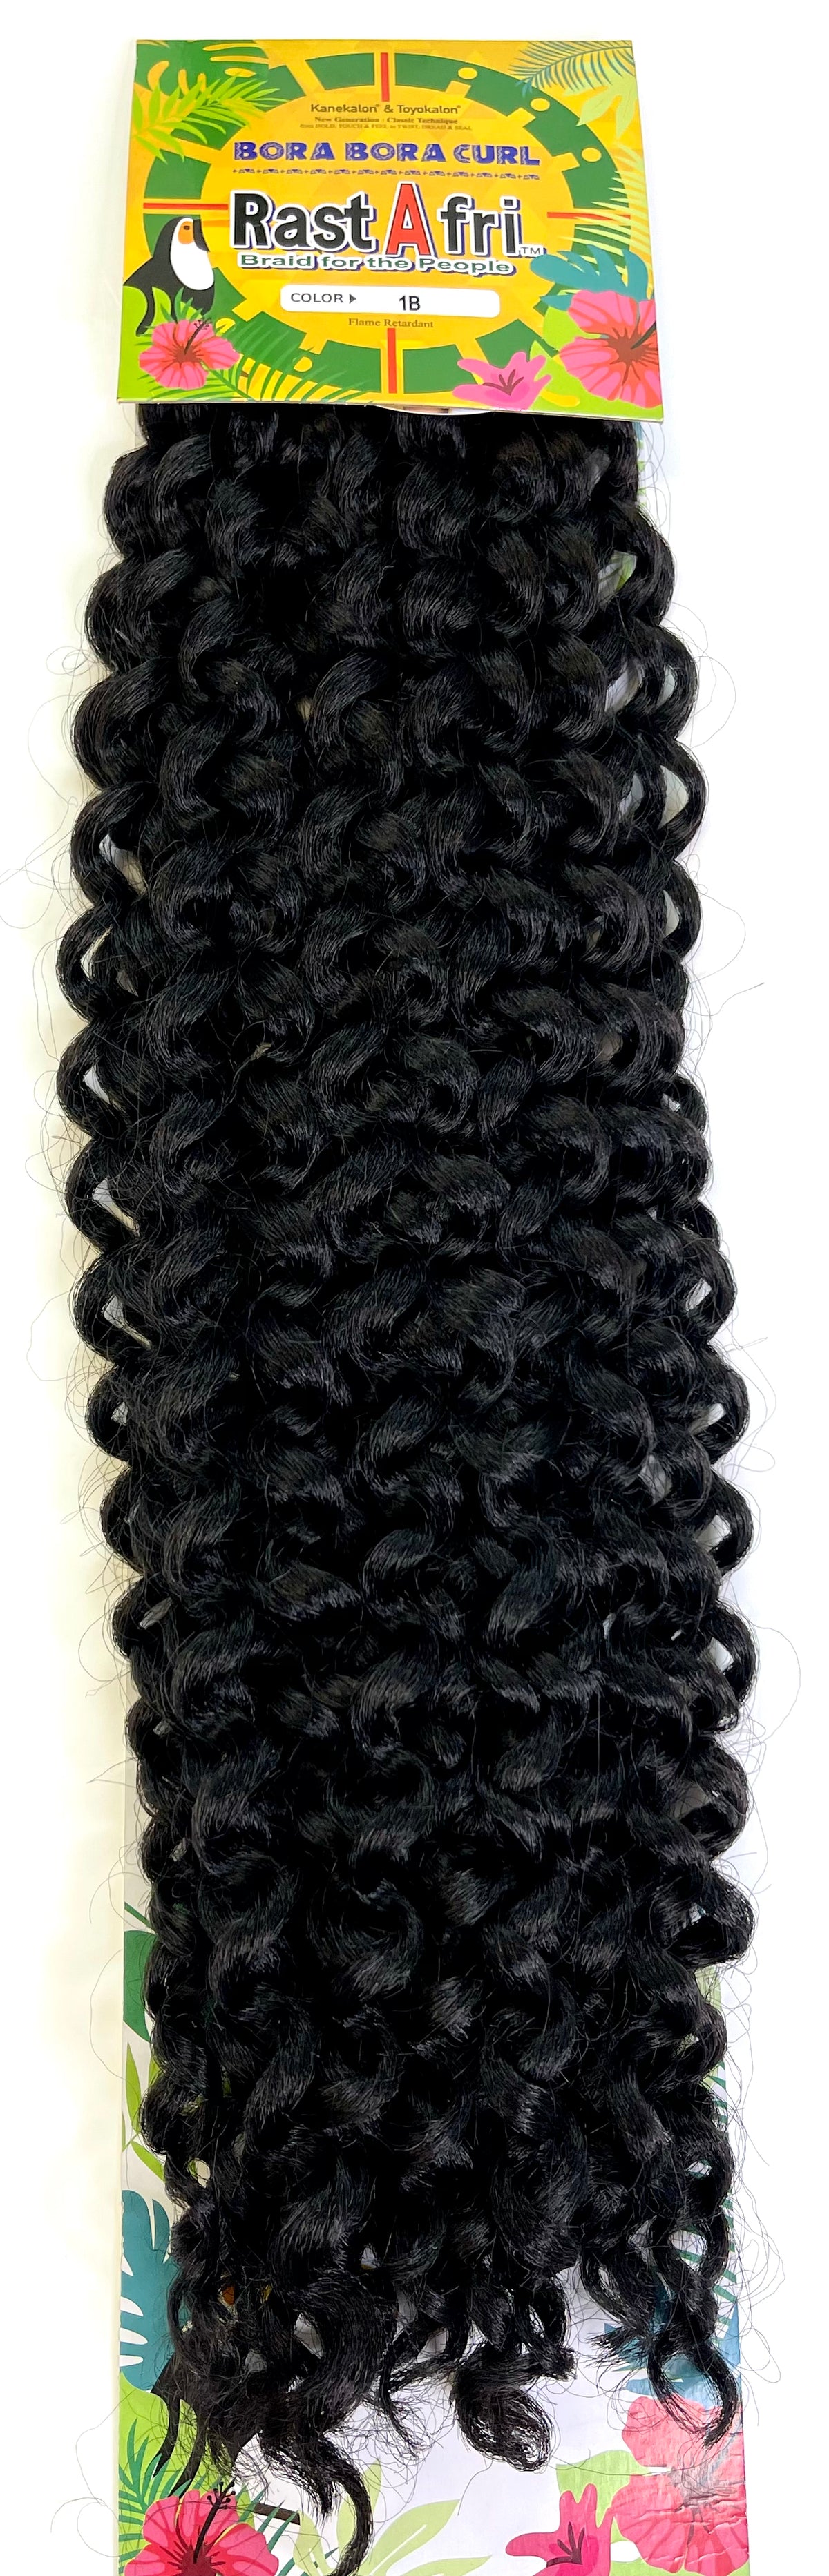 Bora Bora curl crochet braid color 1B